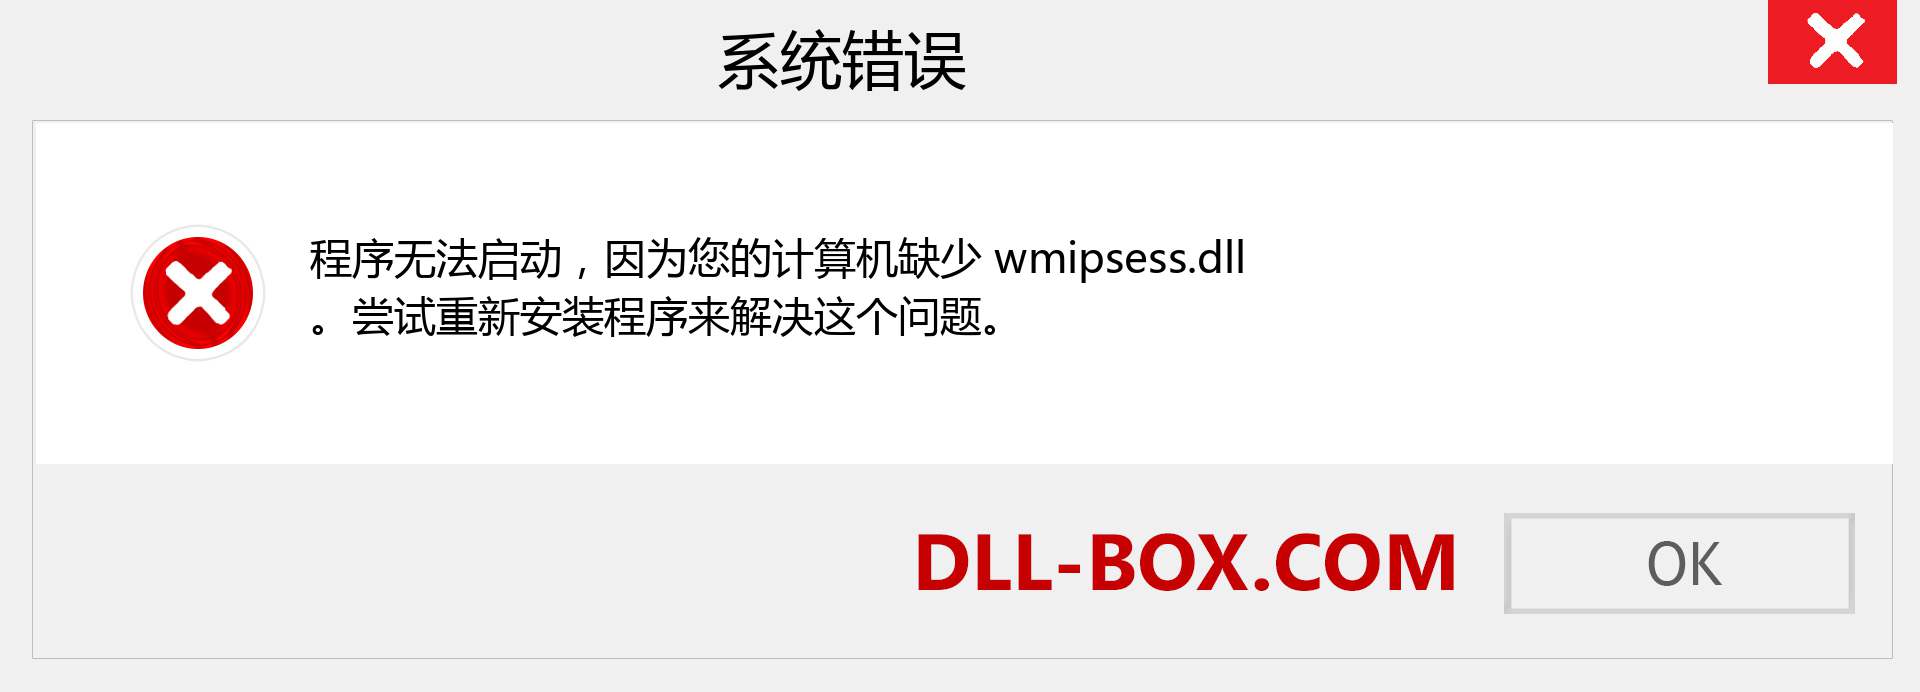 wmipsess.dll 文件丢失？。 适用于 Windows 7、8、10 的下载 - 修复 Windows、照片、图像上的 wmipsess dll 丢失错误